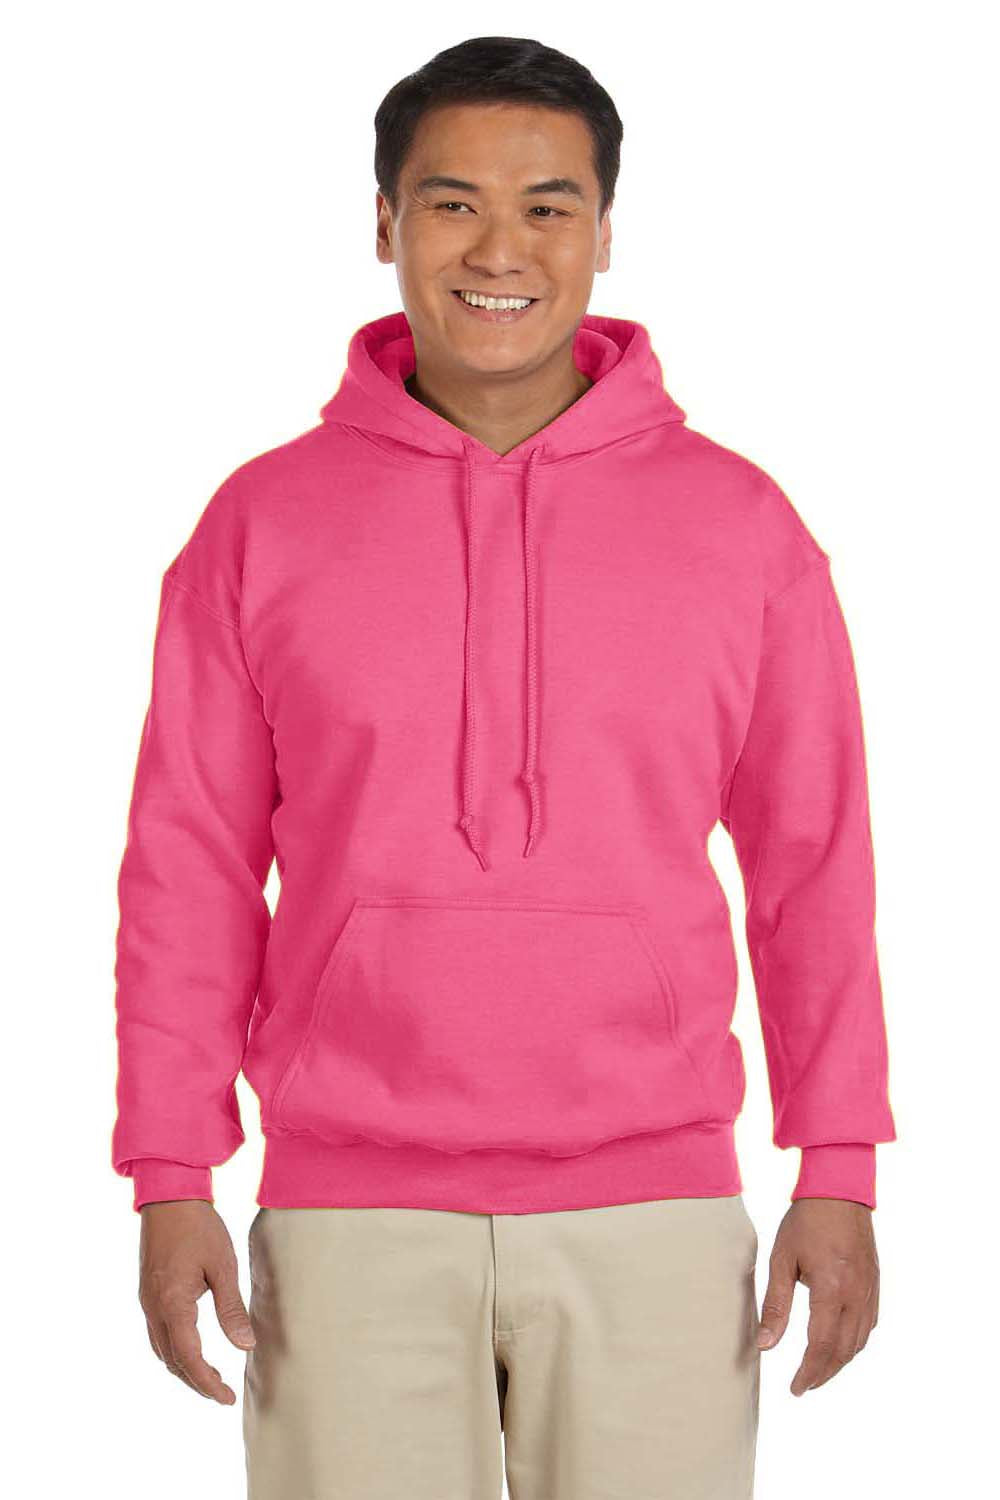 Gildan G185 Mens Hooded Sweatshirt Hoodie Safety Pink Front